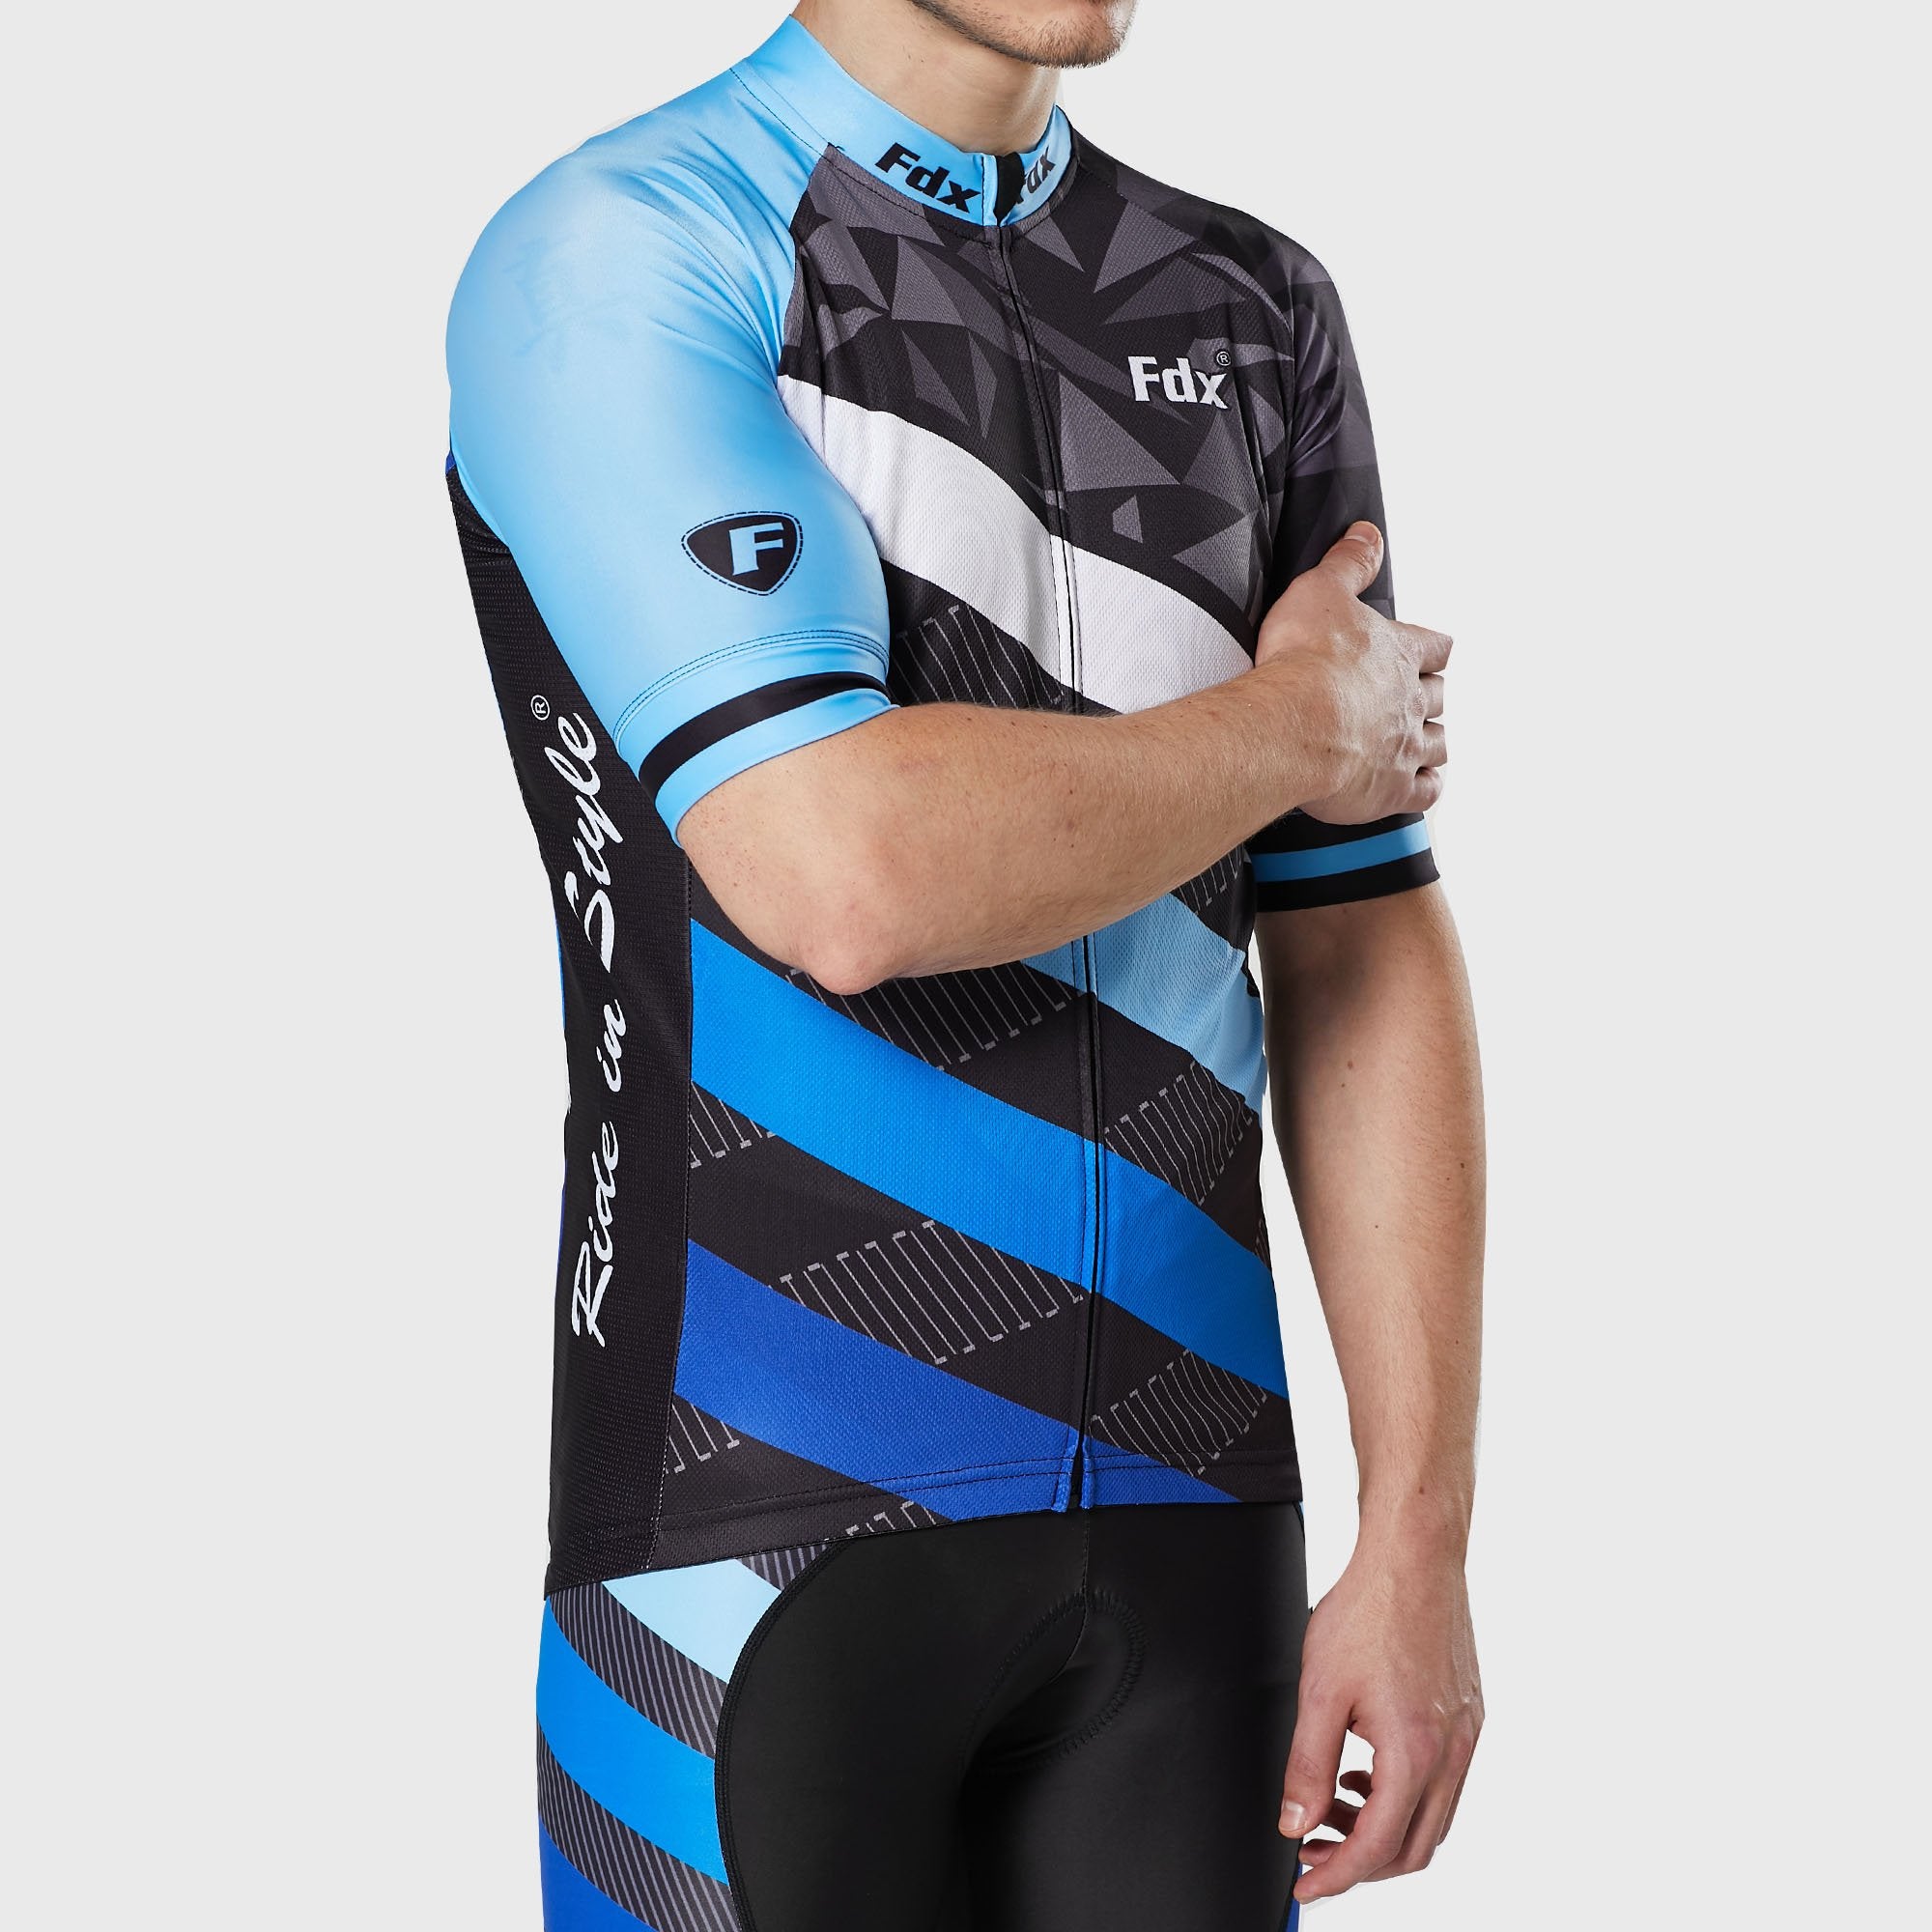 Fdx Equin Blue Men's Short Sleeve Summer Cycling Jersey